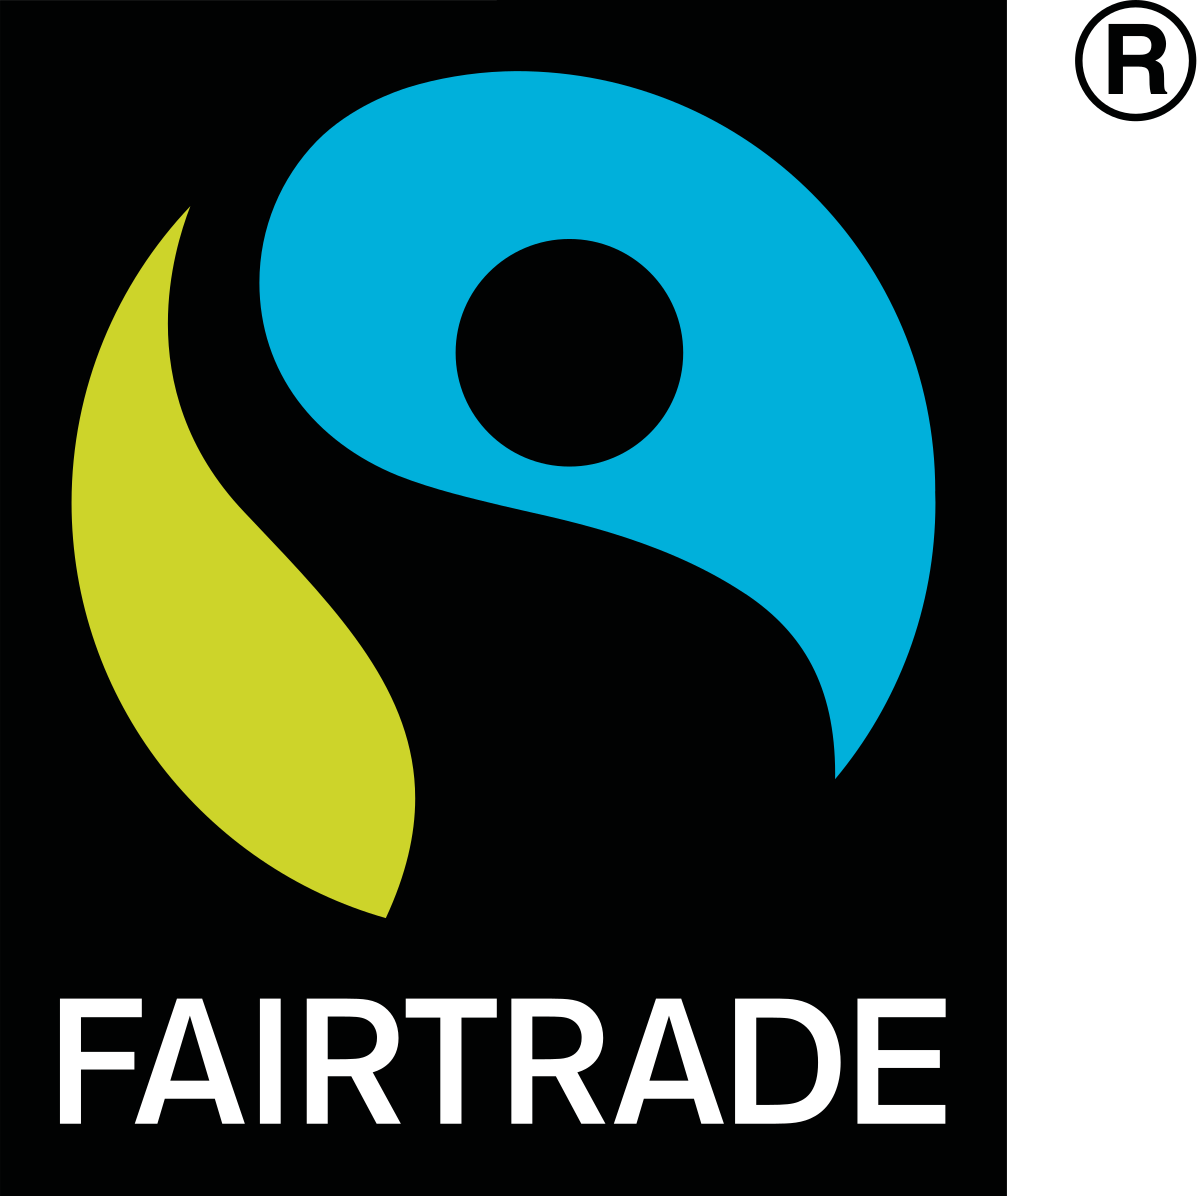 Fairtrade Marchio etico internazionale, certifica prodotti provenienti dal commercio equo solidale